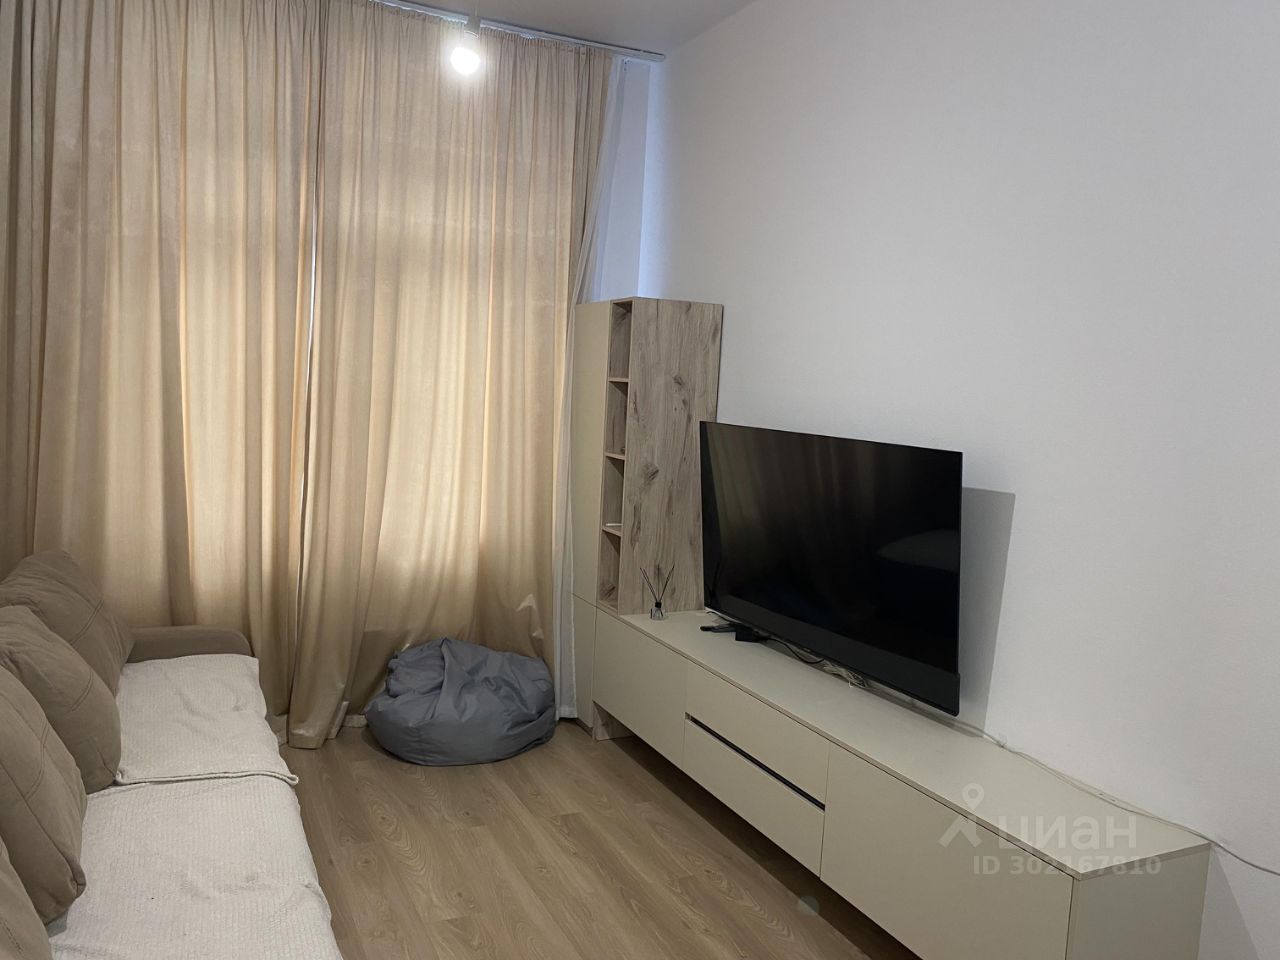 Светлая гостиная с уютным диваном, современным телевизором и стильной мебелью. Просторная квартира в Екатеринбурге, 63 кв.м, 3 комнаты.